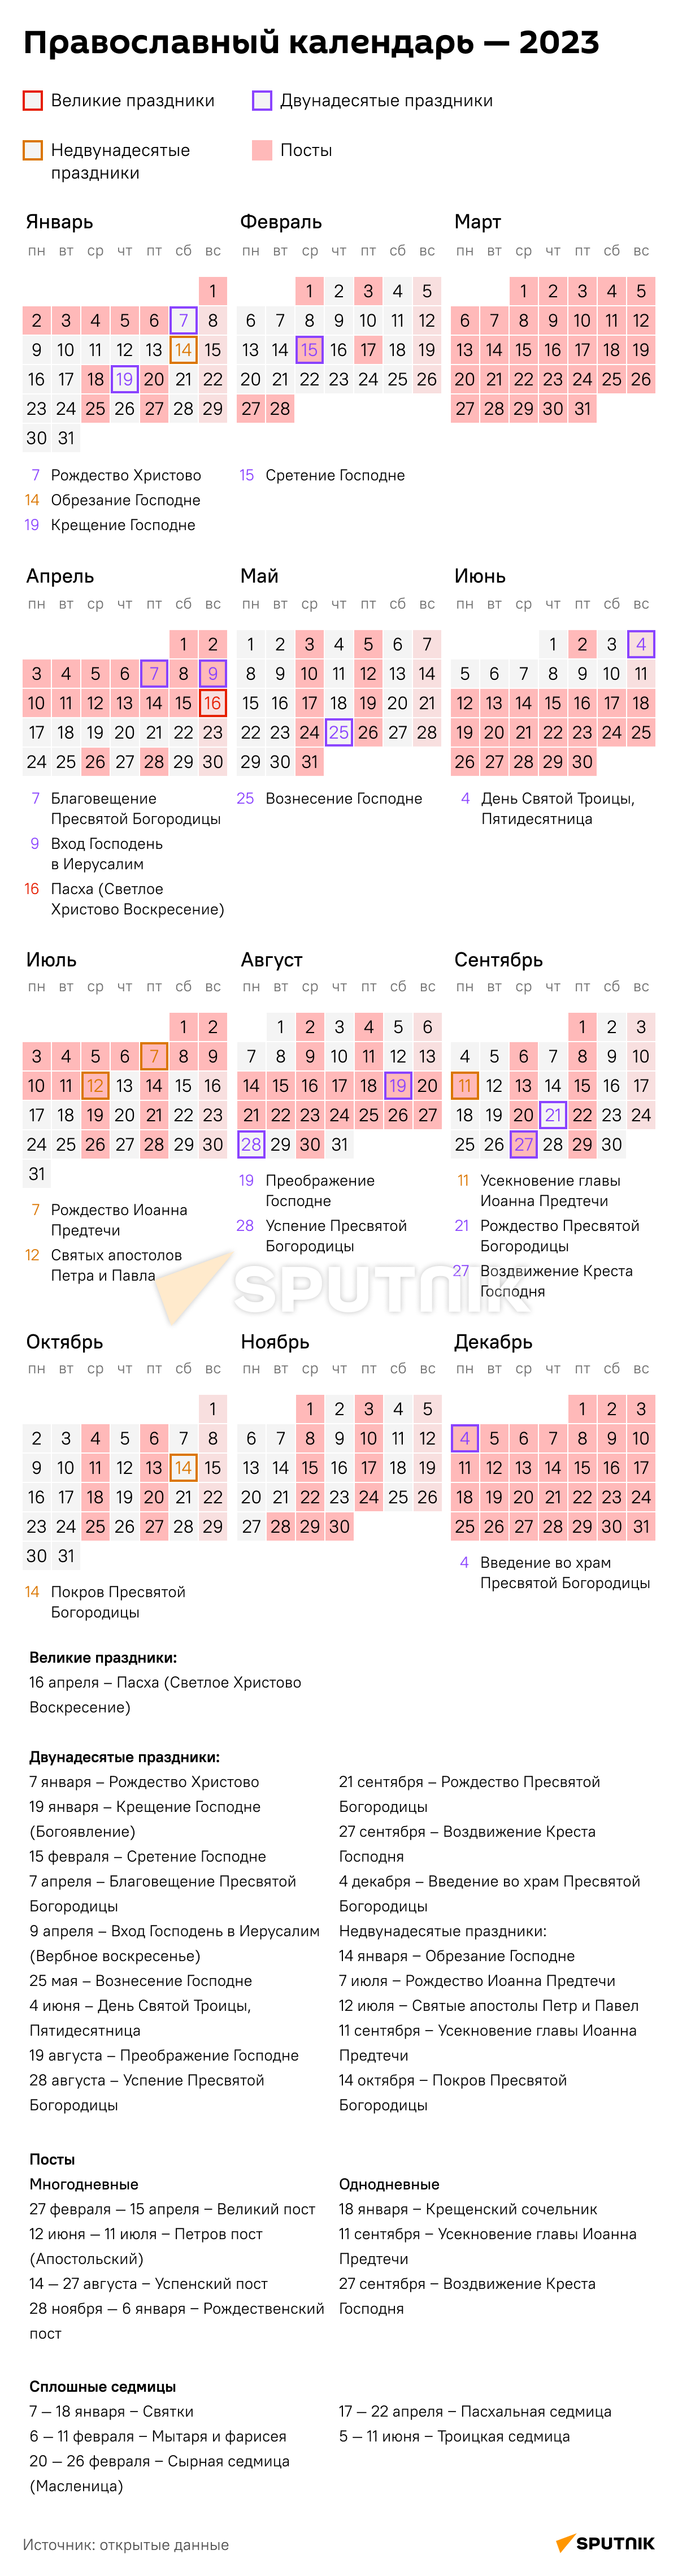 православный календарь на 2023 с постами и праздниками каждый